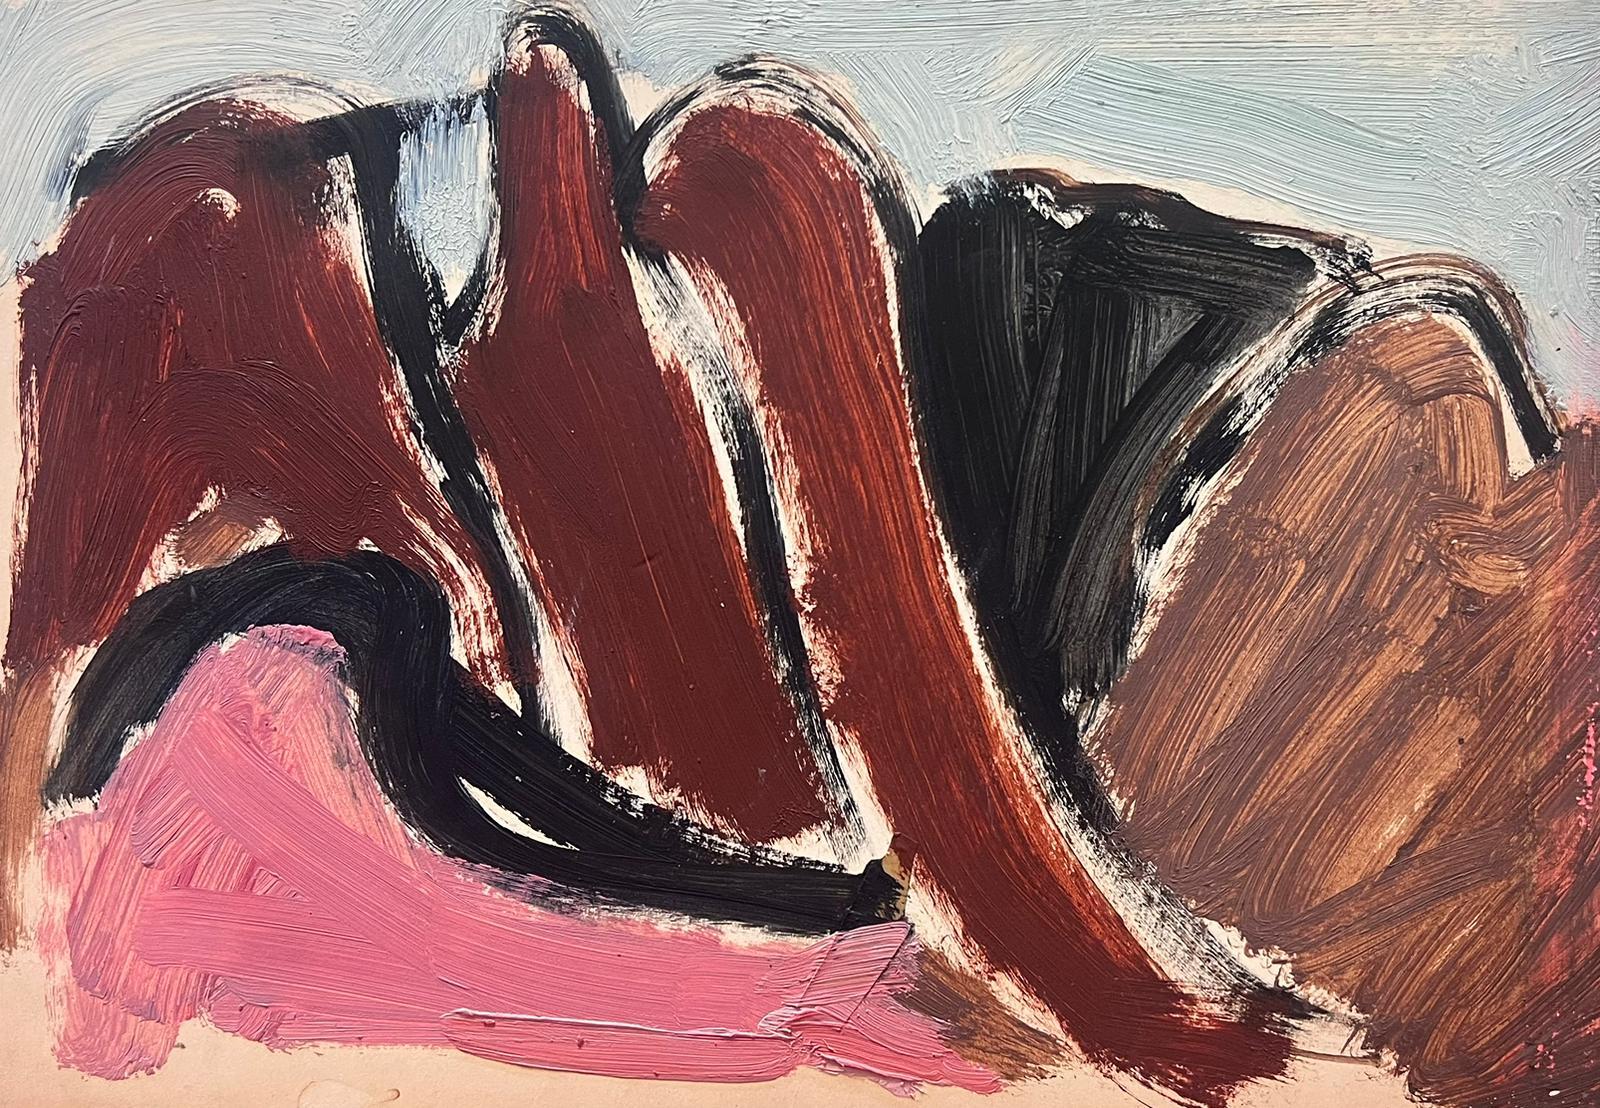 Abstract Painting Elisabeth Hahn - Peinture à l'huile moderniste allemande du 20e siècle, collines brunes et roses